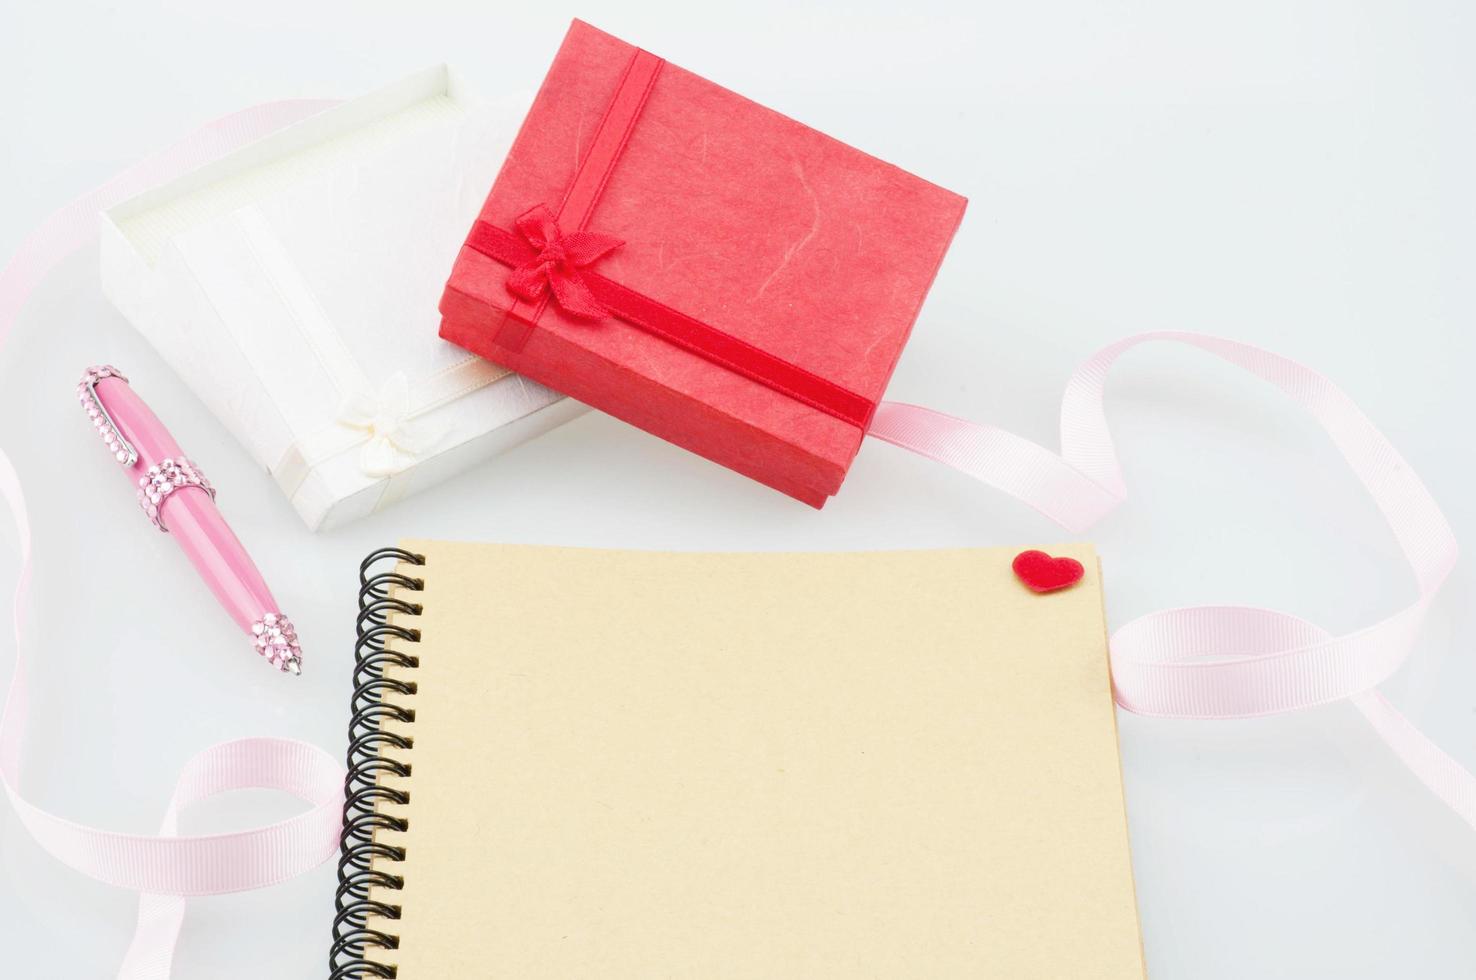 caderno com caneta rosa e caixas de presente com decoração de fita - ecard amor com conceito de presentes foto